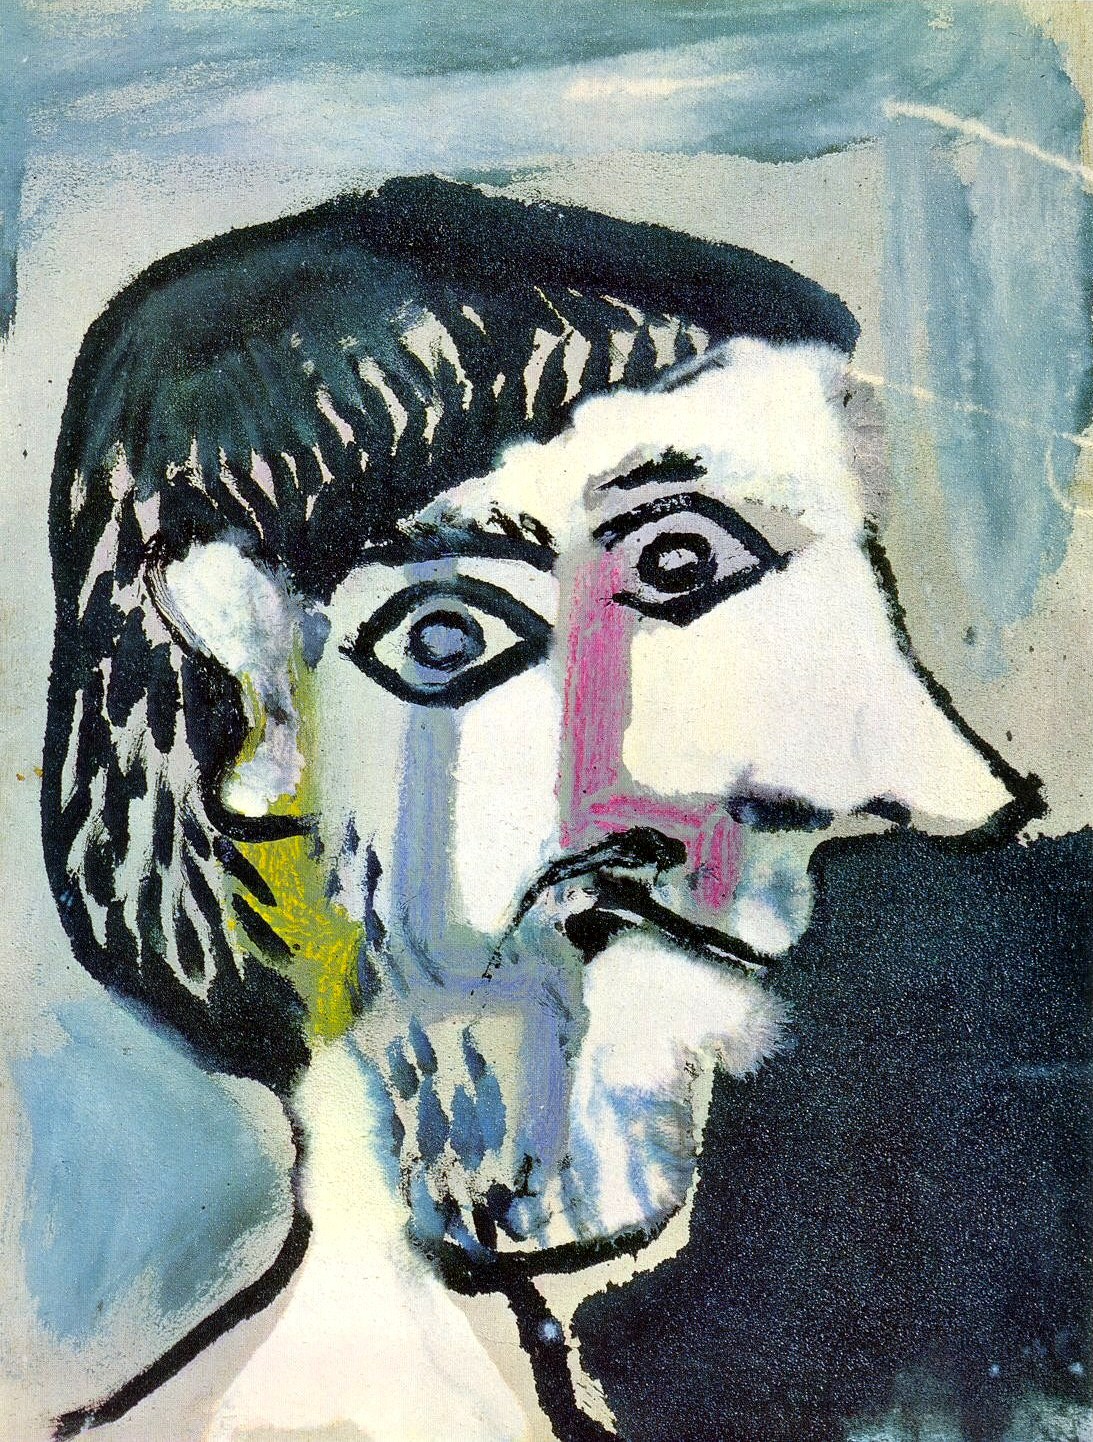 Пабло Пикассо. Голова мужчины в профиль". 1964.